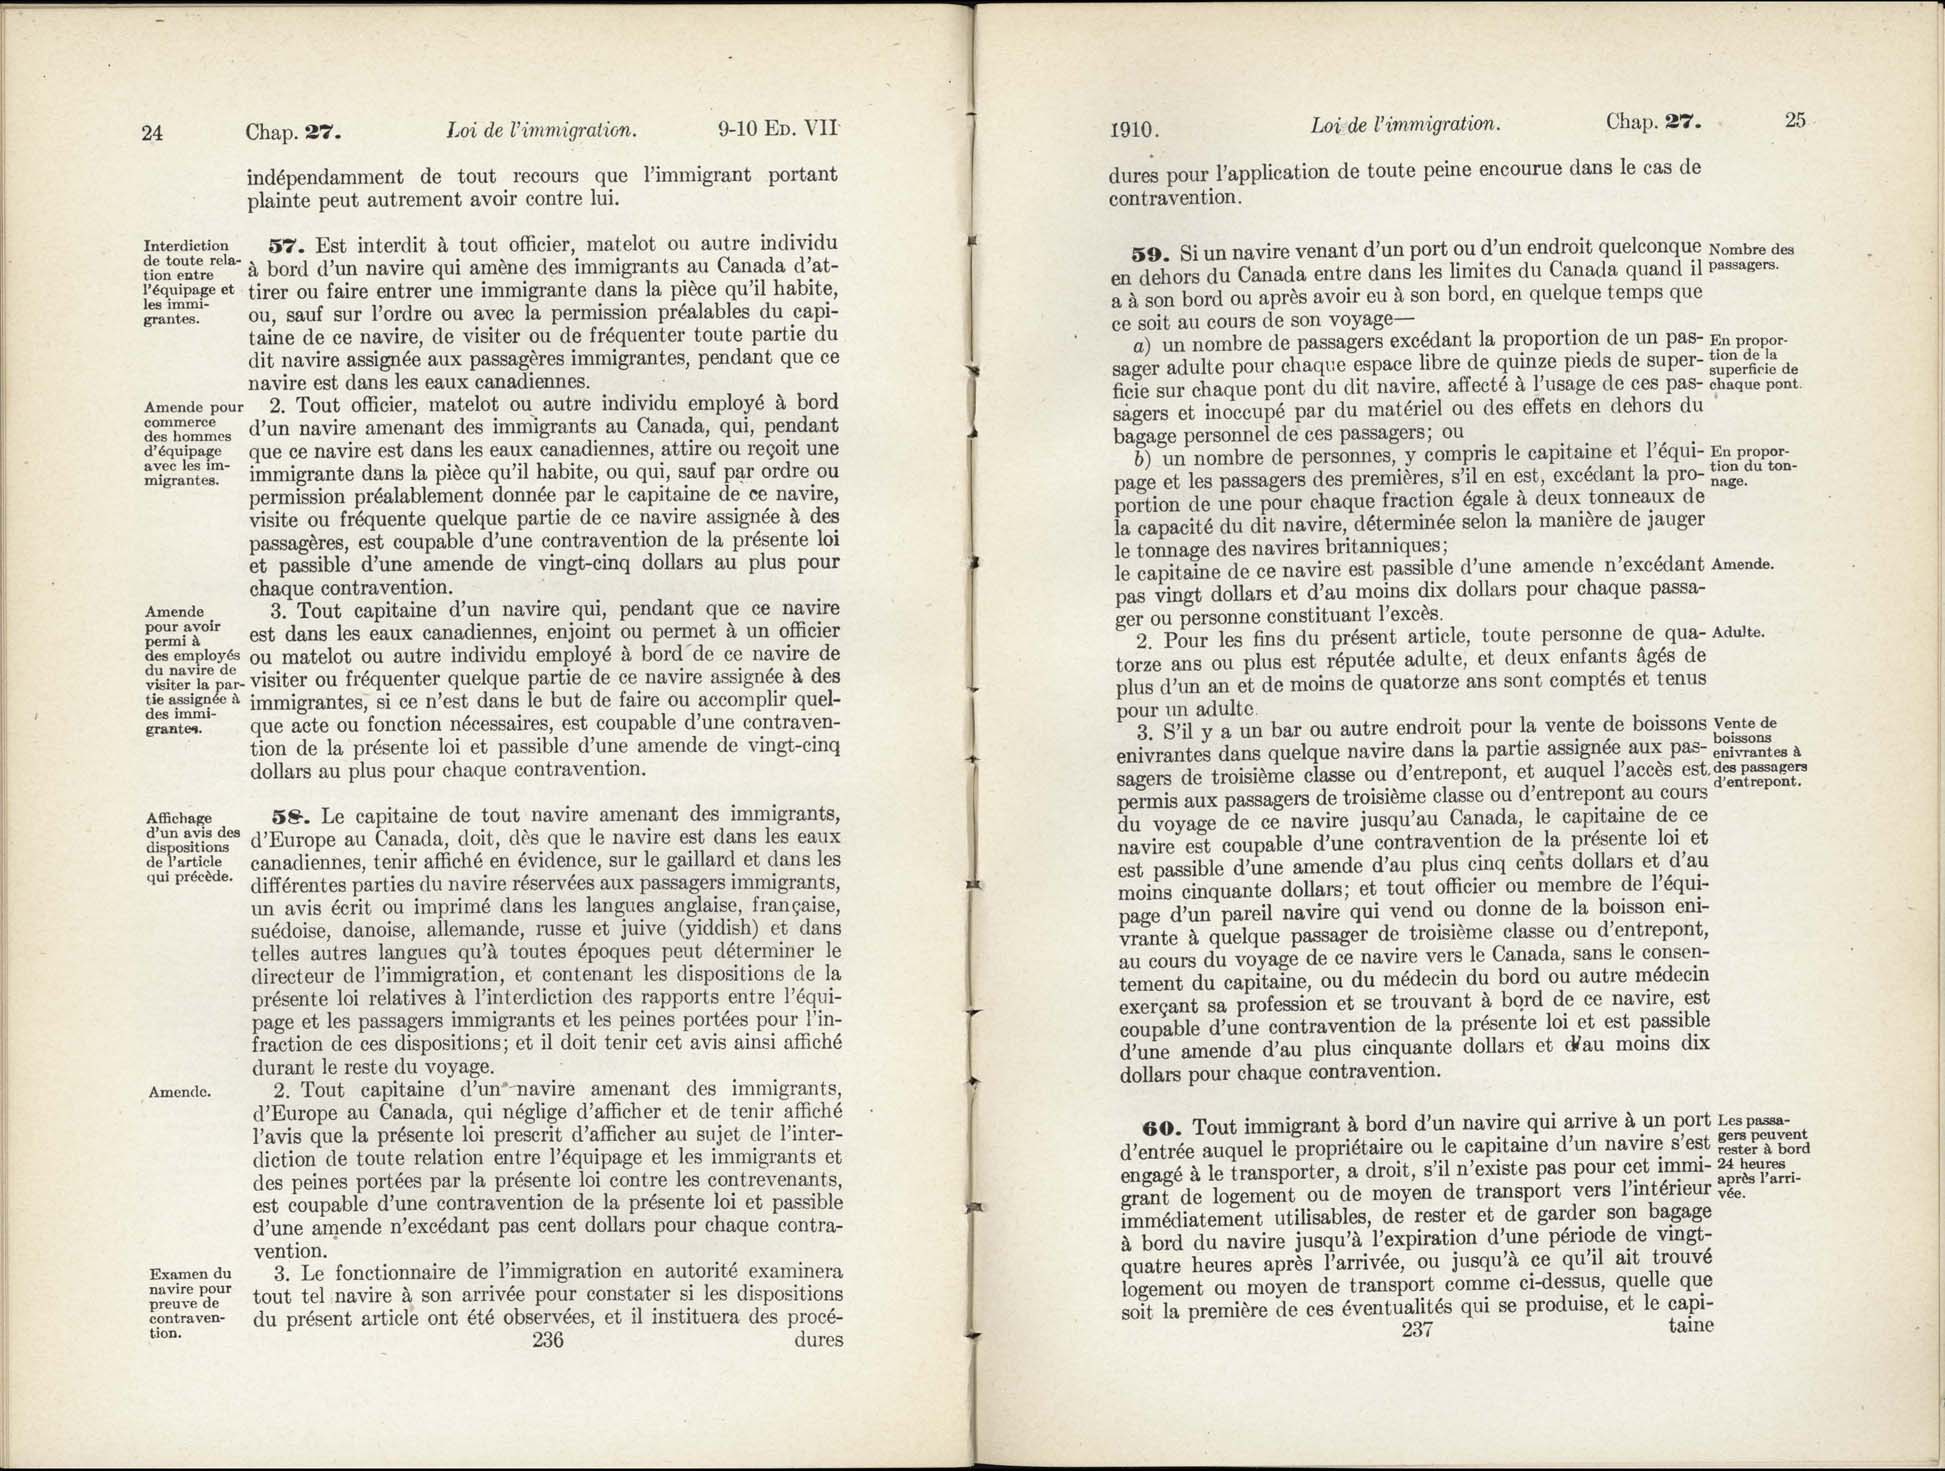 Chap 27 Page 236, 237 L’Acte d’immigration, 1910